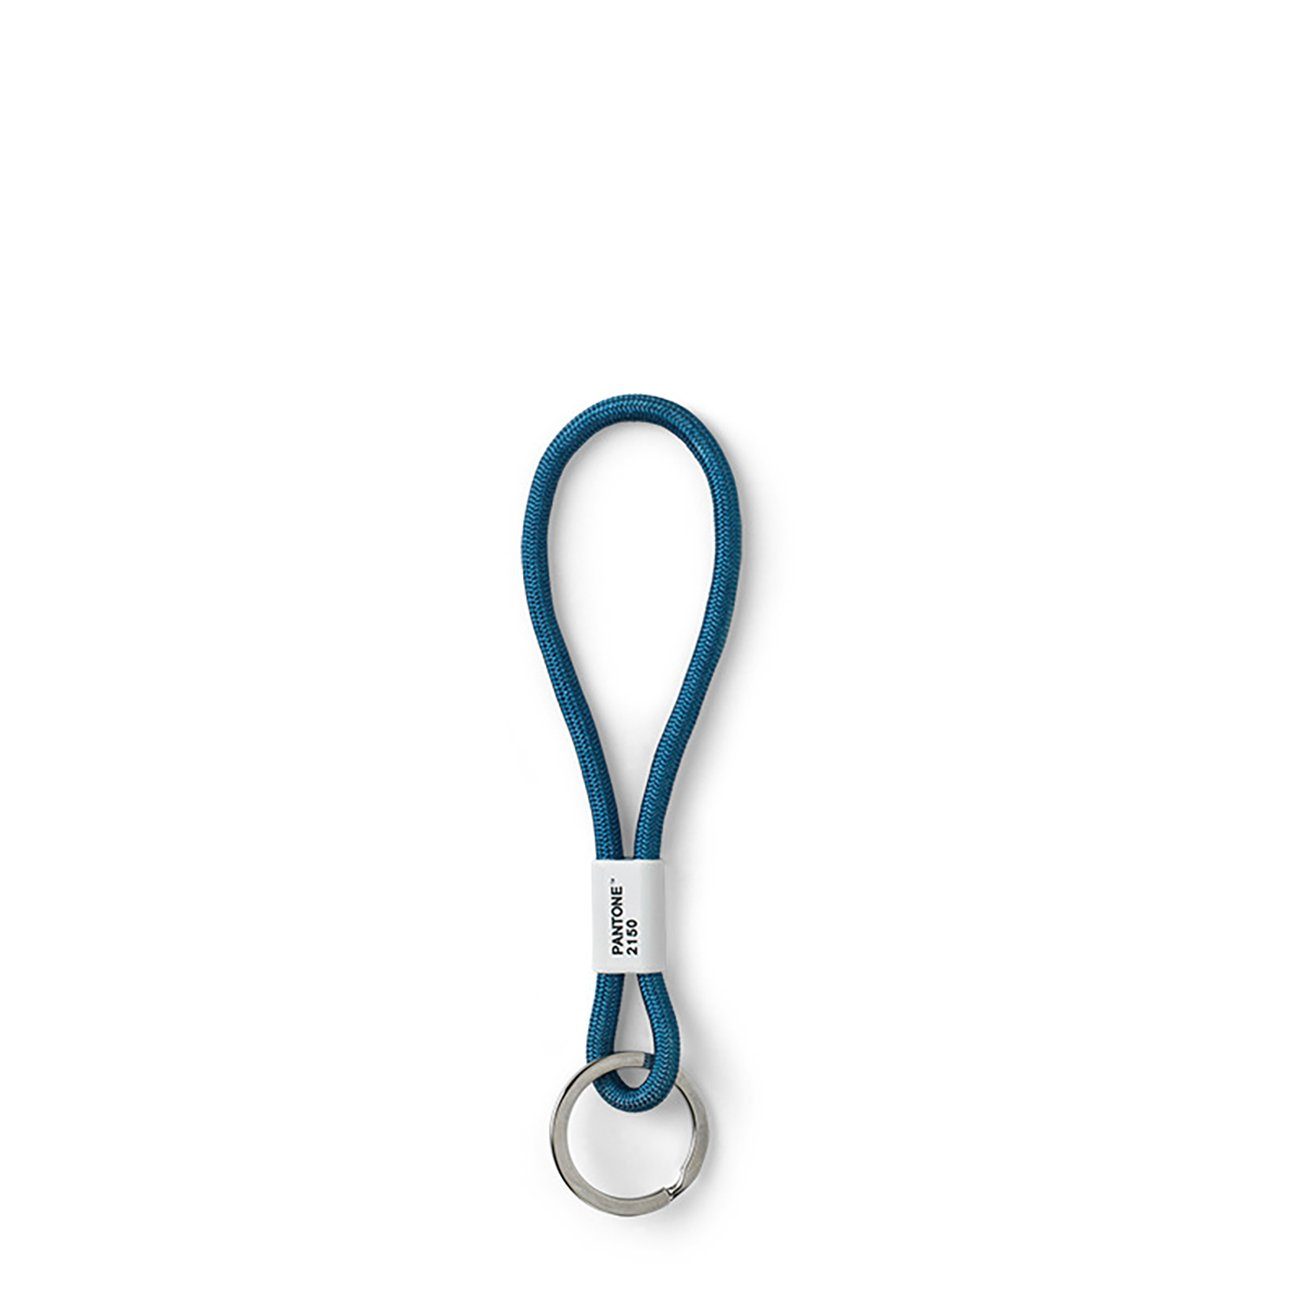 PANTONE Schlüsselanhänger, Design-Schlüsselband Key Chain Short, CoY 2020 - Classic Blue 19-4052